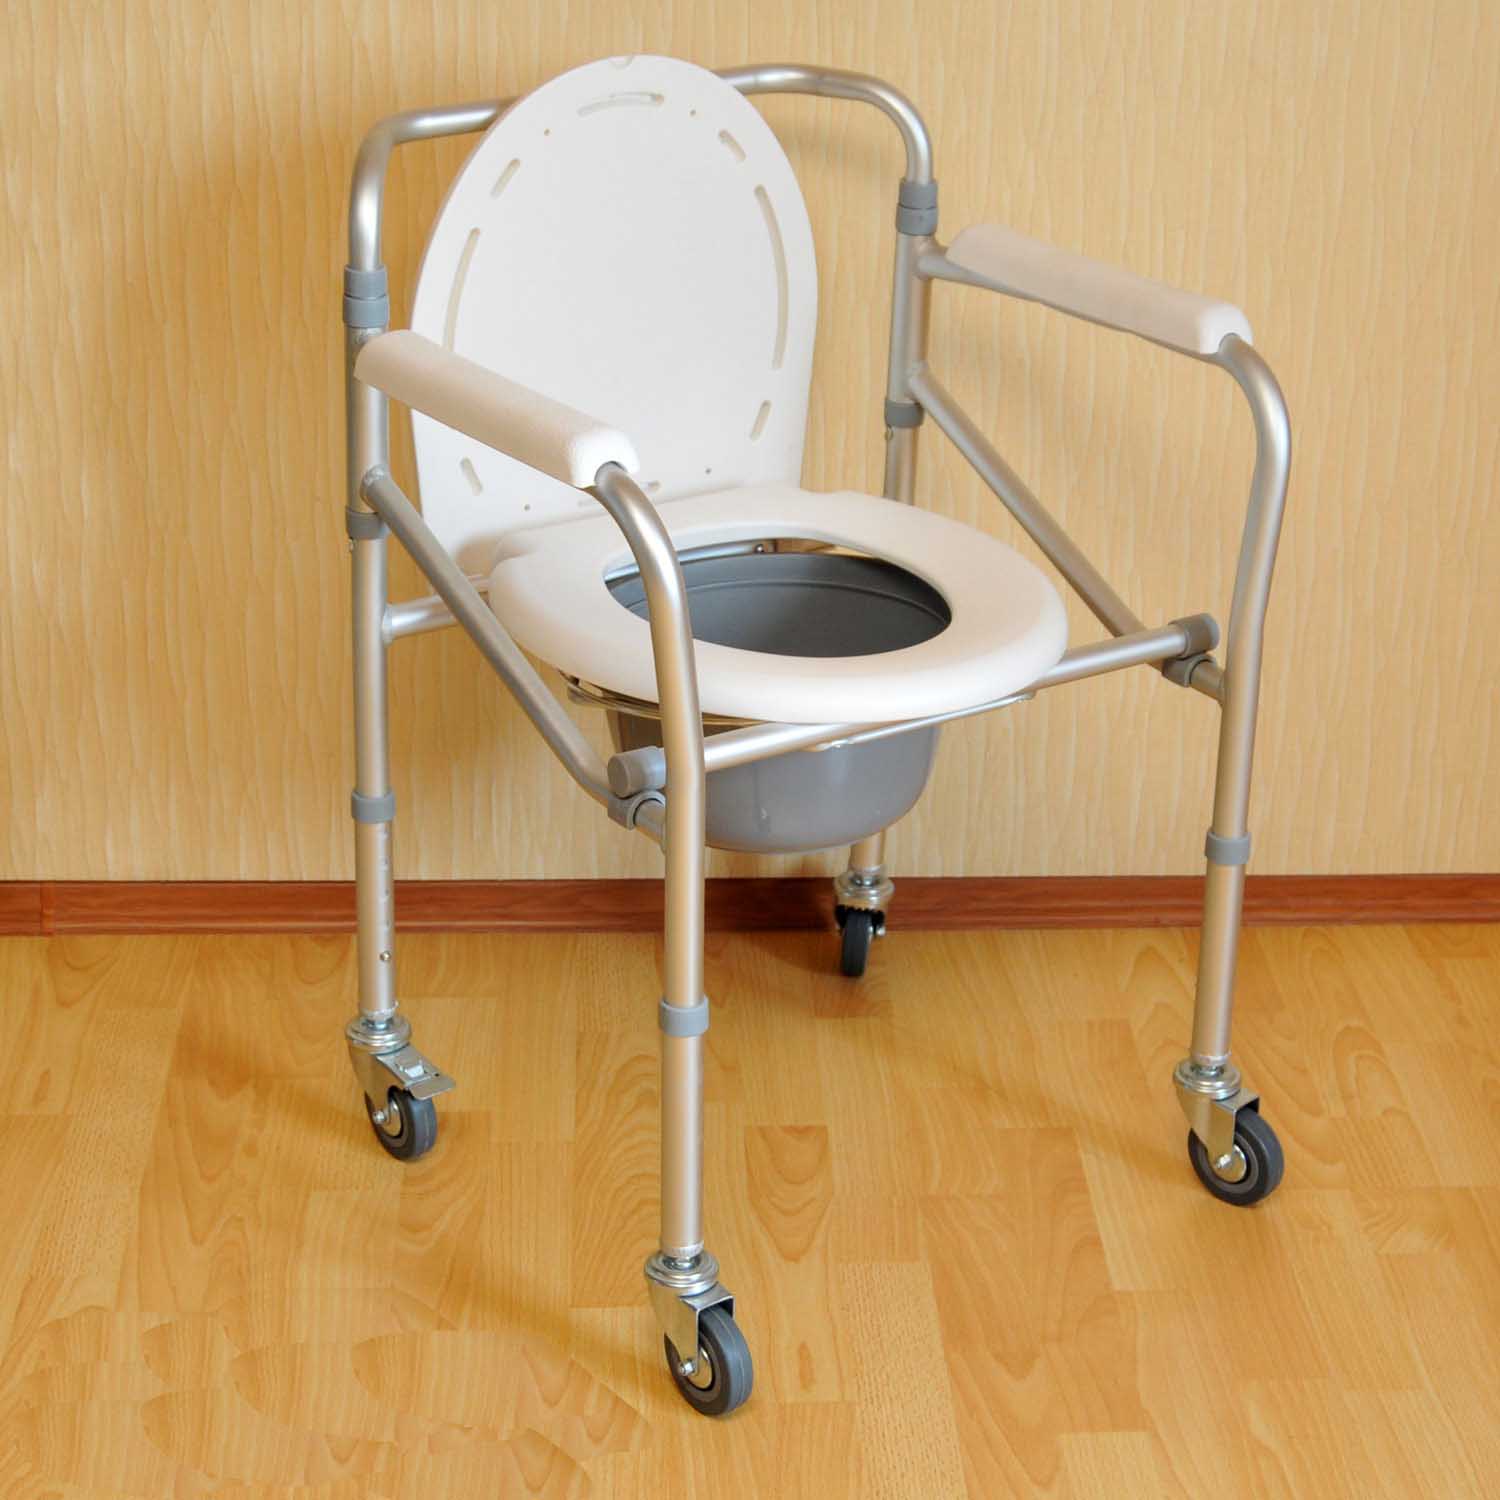 Кресло – стул с санитарным оснащением на колесиках